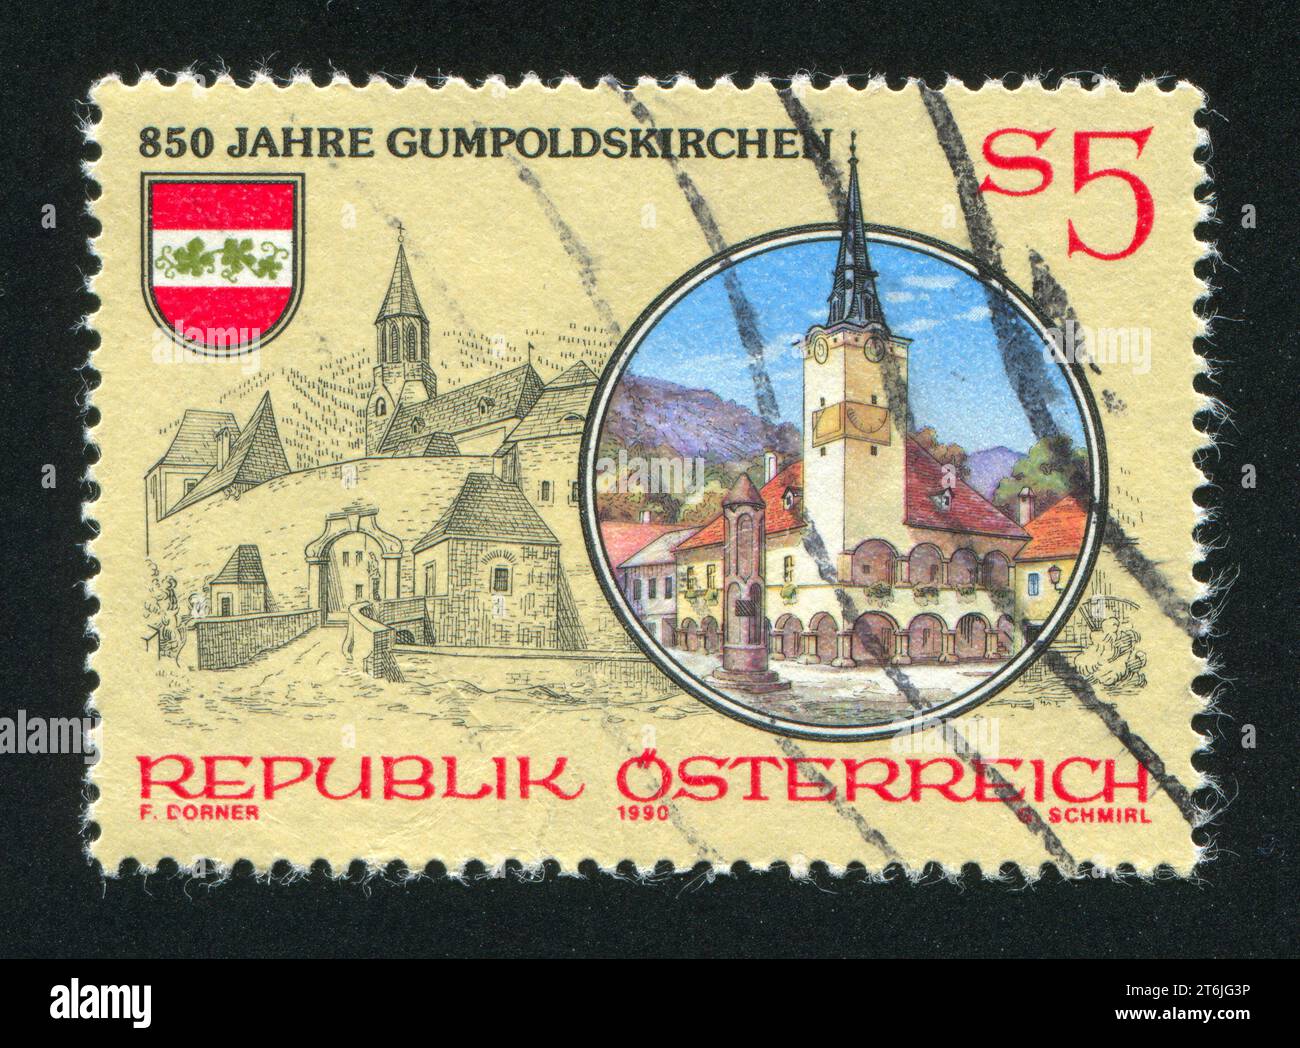 AUTRICHE - CIRCA 1990 : timbre imprimé par l'Autriche, montre Gumpoldskirchen, circa 1990 Banque D'Images